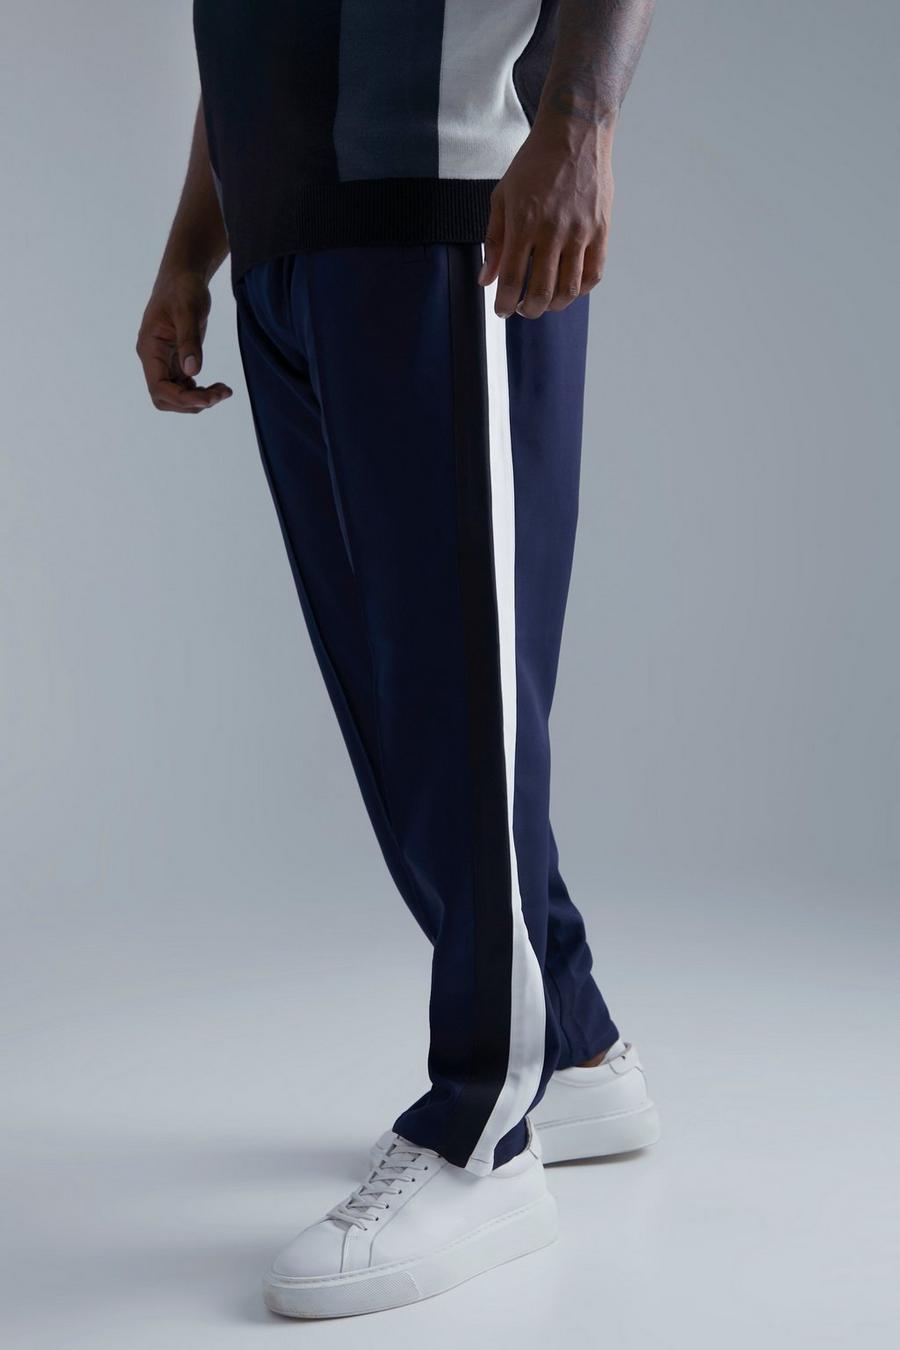 Pantalón Plus entallado con estampado universitario, Navy blu oltremare